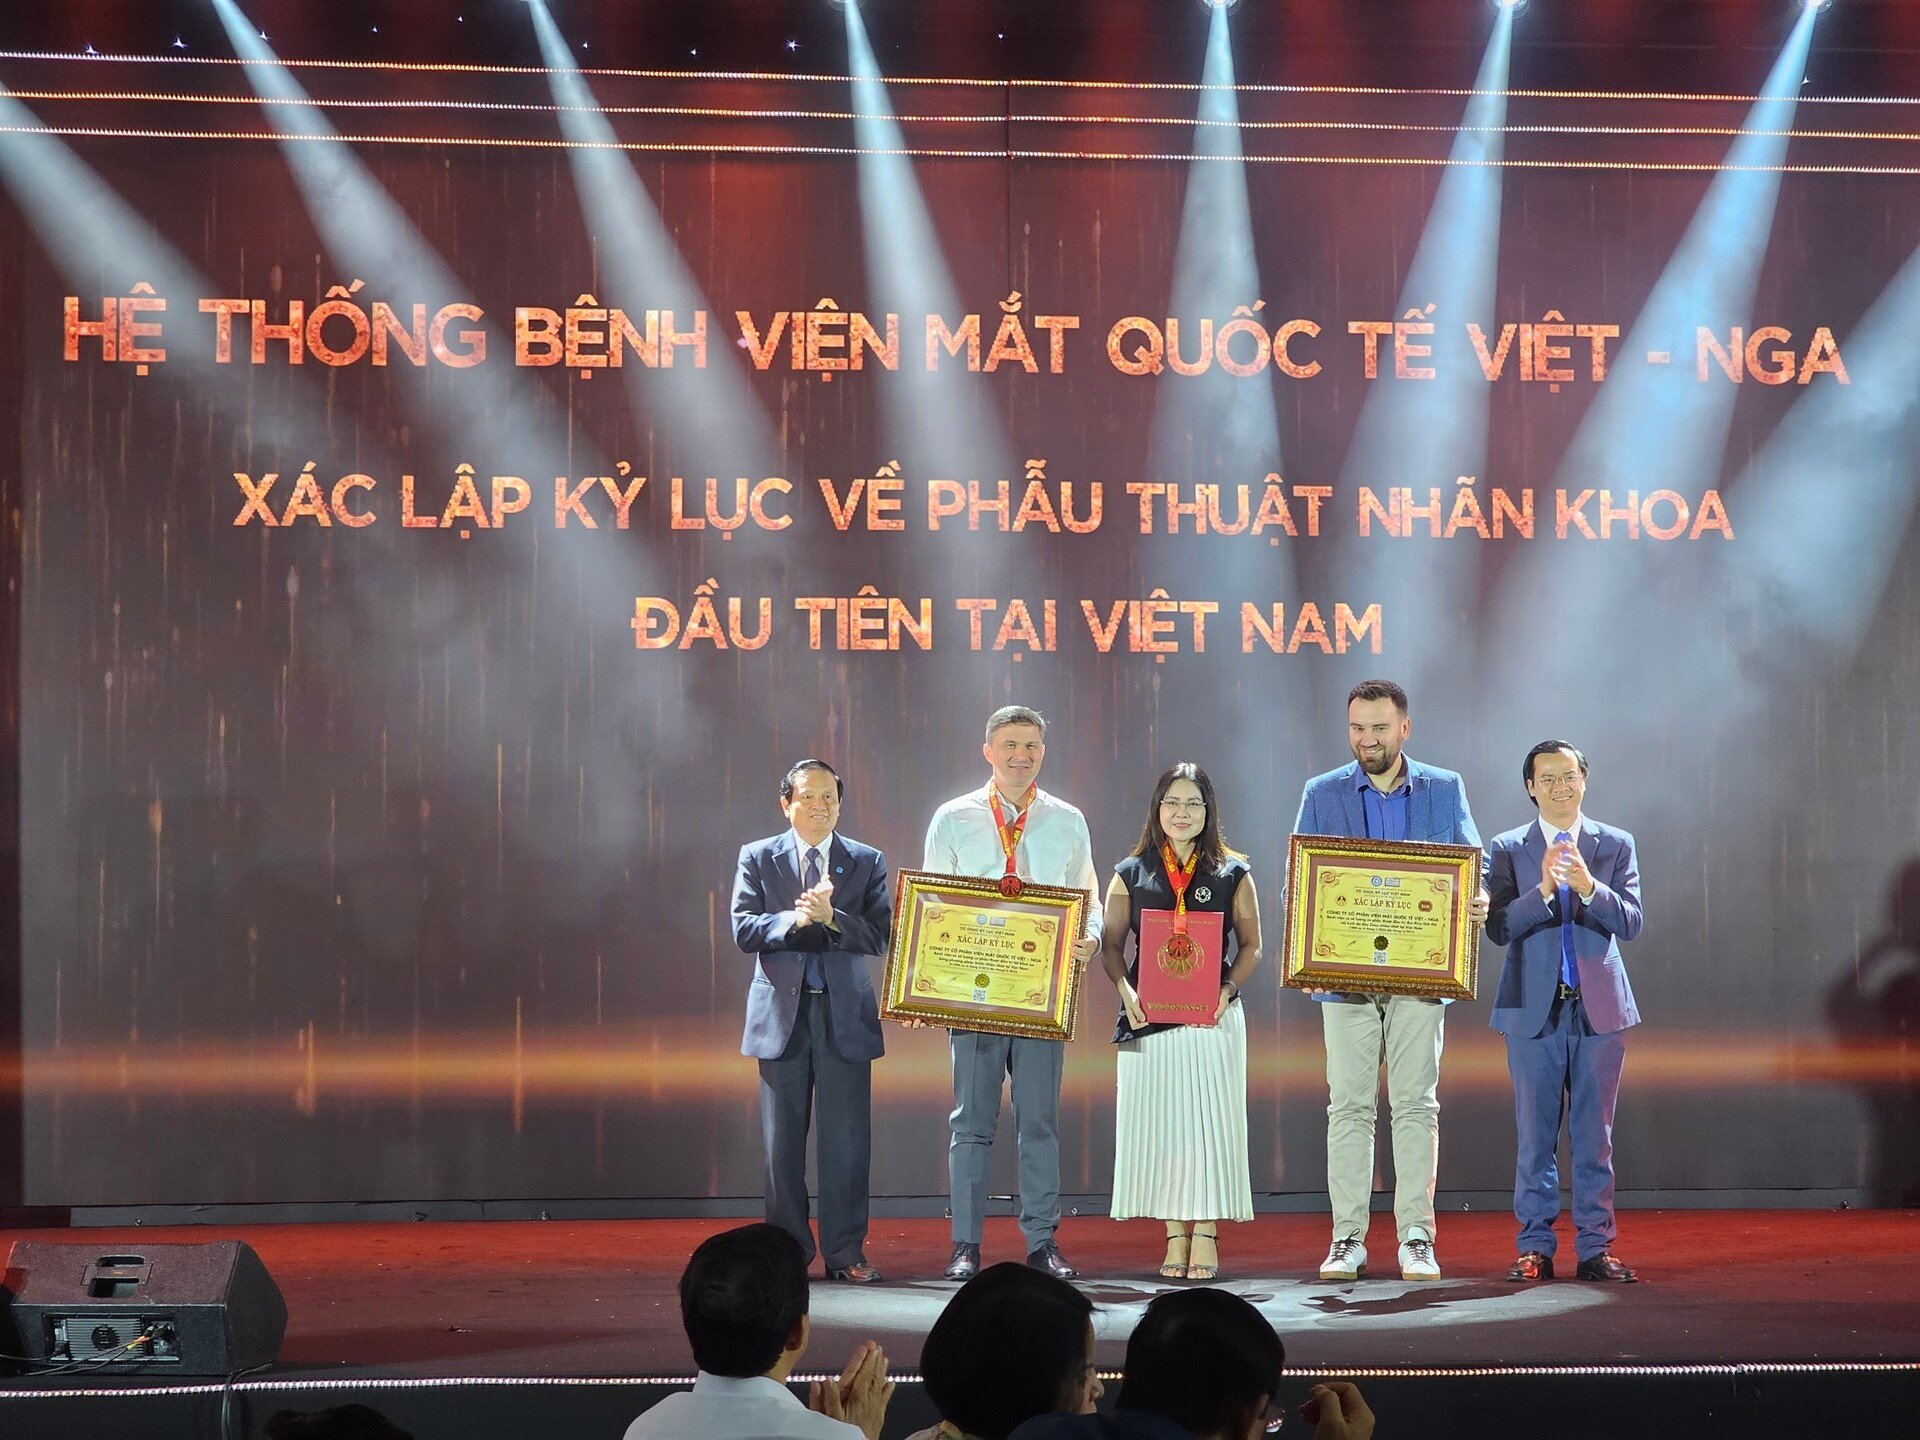 Bệnh viện Mắt quốc tế Việt - Nga đón nhận kỷ lục Việt Nam